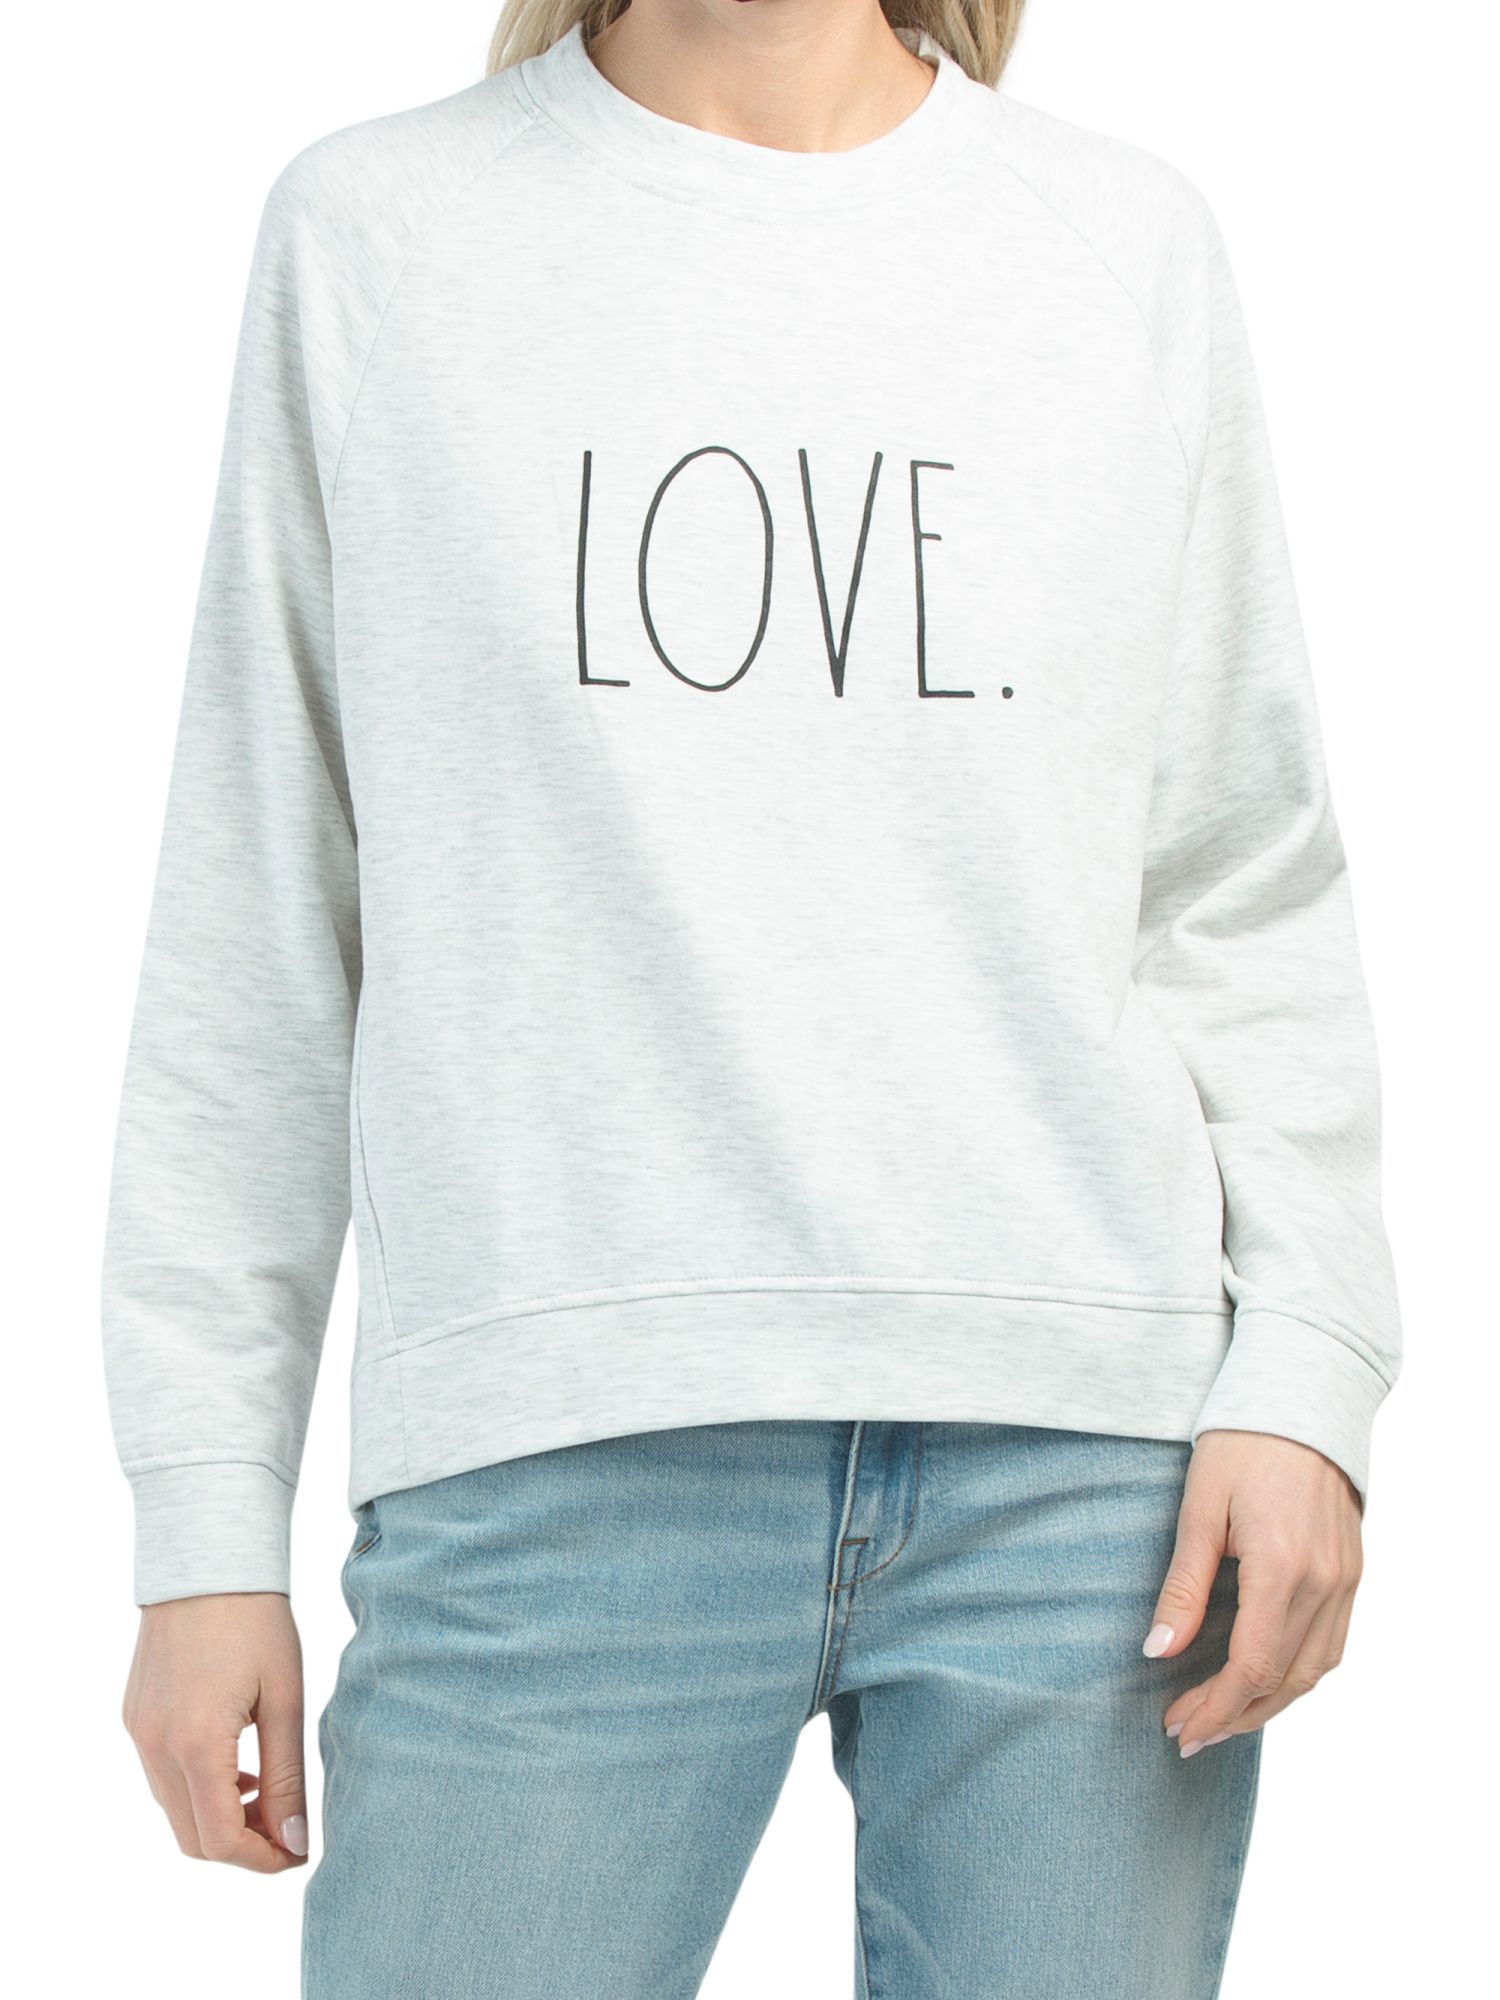 Love Sweatshirt | TJ Maxx